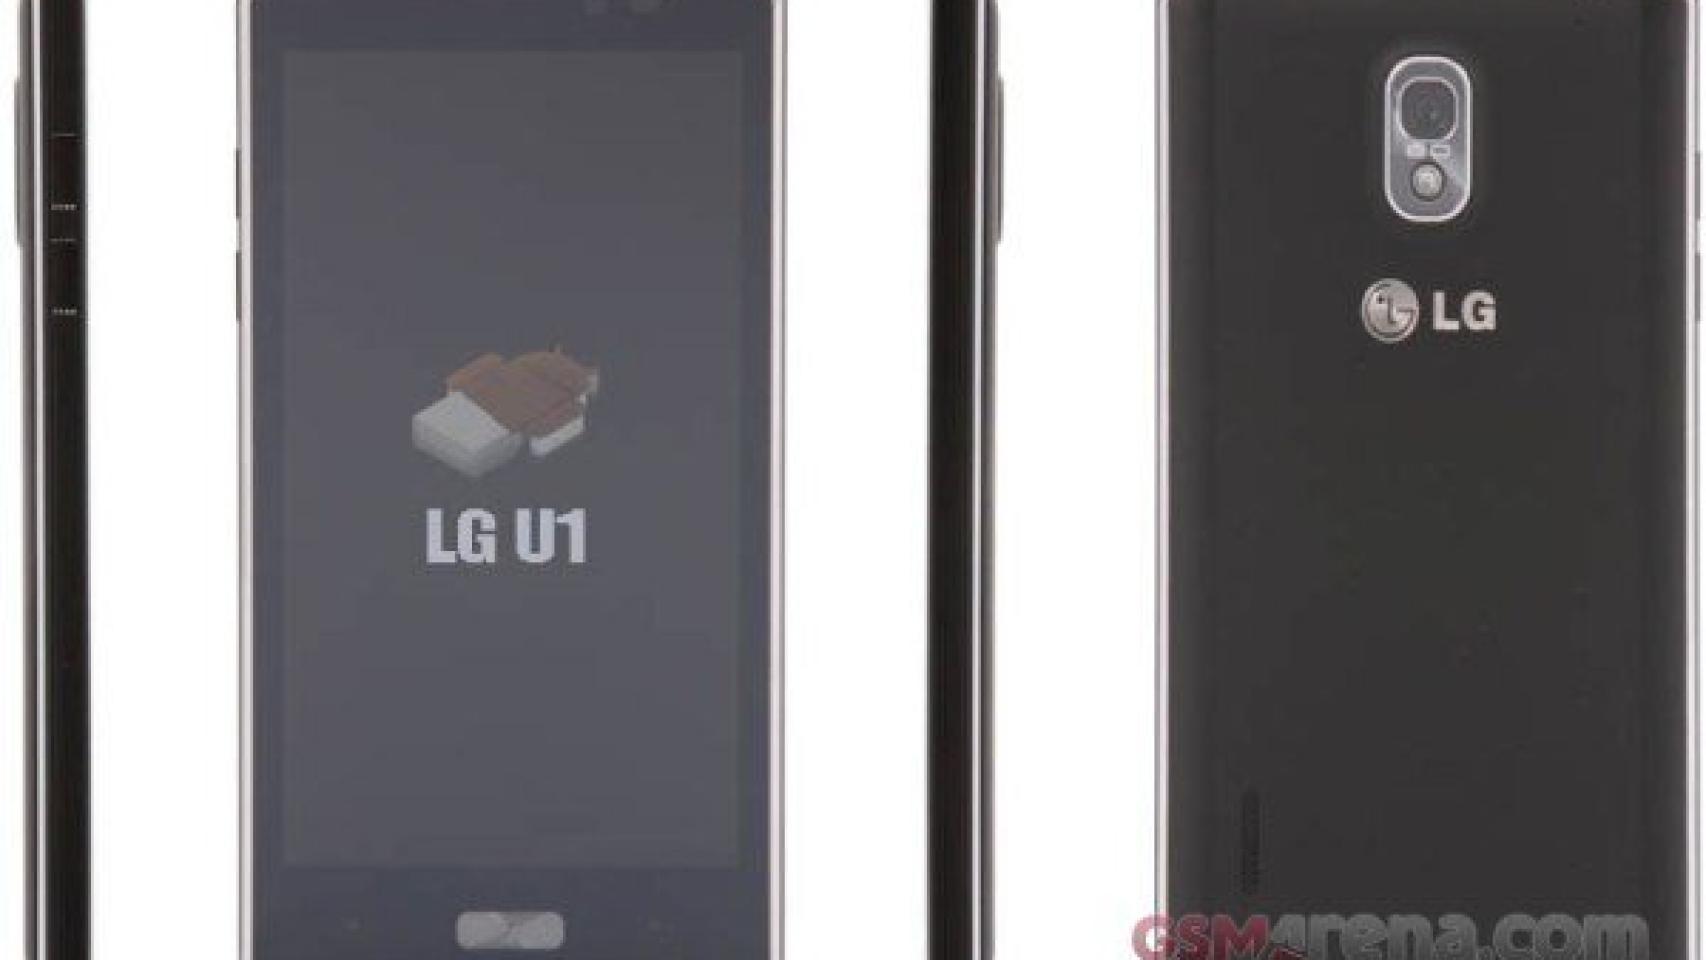 El primer LG con Ice Cream Sandwich 4.0 es este: LG Optimus U1